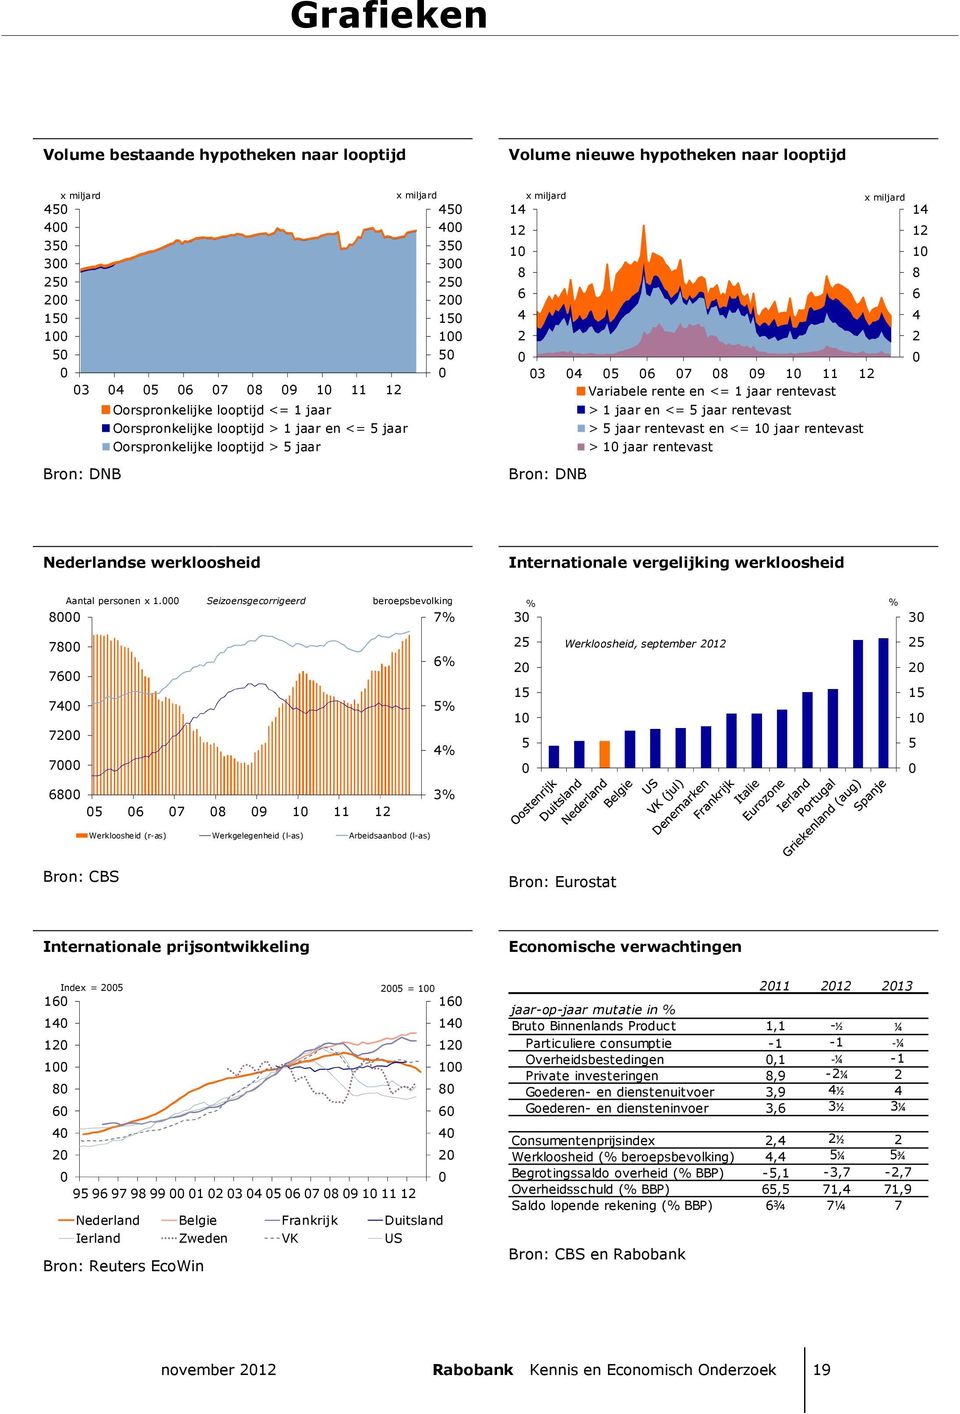 jaar rentevast > jaar rentevast en <= 1 jaar rentevast > 1 jaar rentevast x miljard 14 12 1 8 6 4 2 Nederlandse werkloosheid Internationale vergelijking werkloosheid Aantal personen x 1.